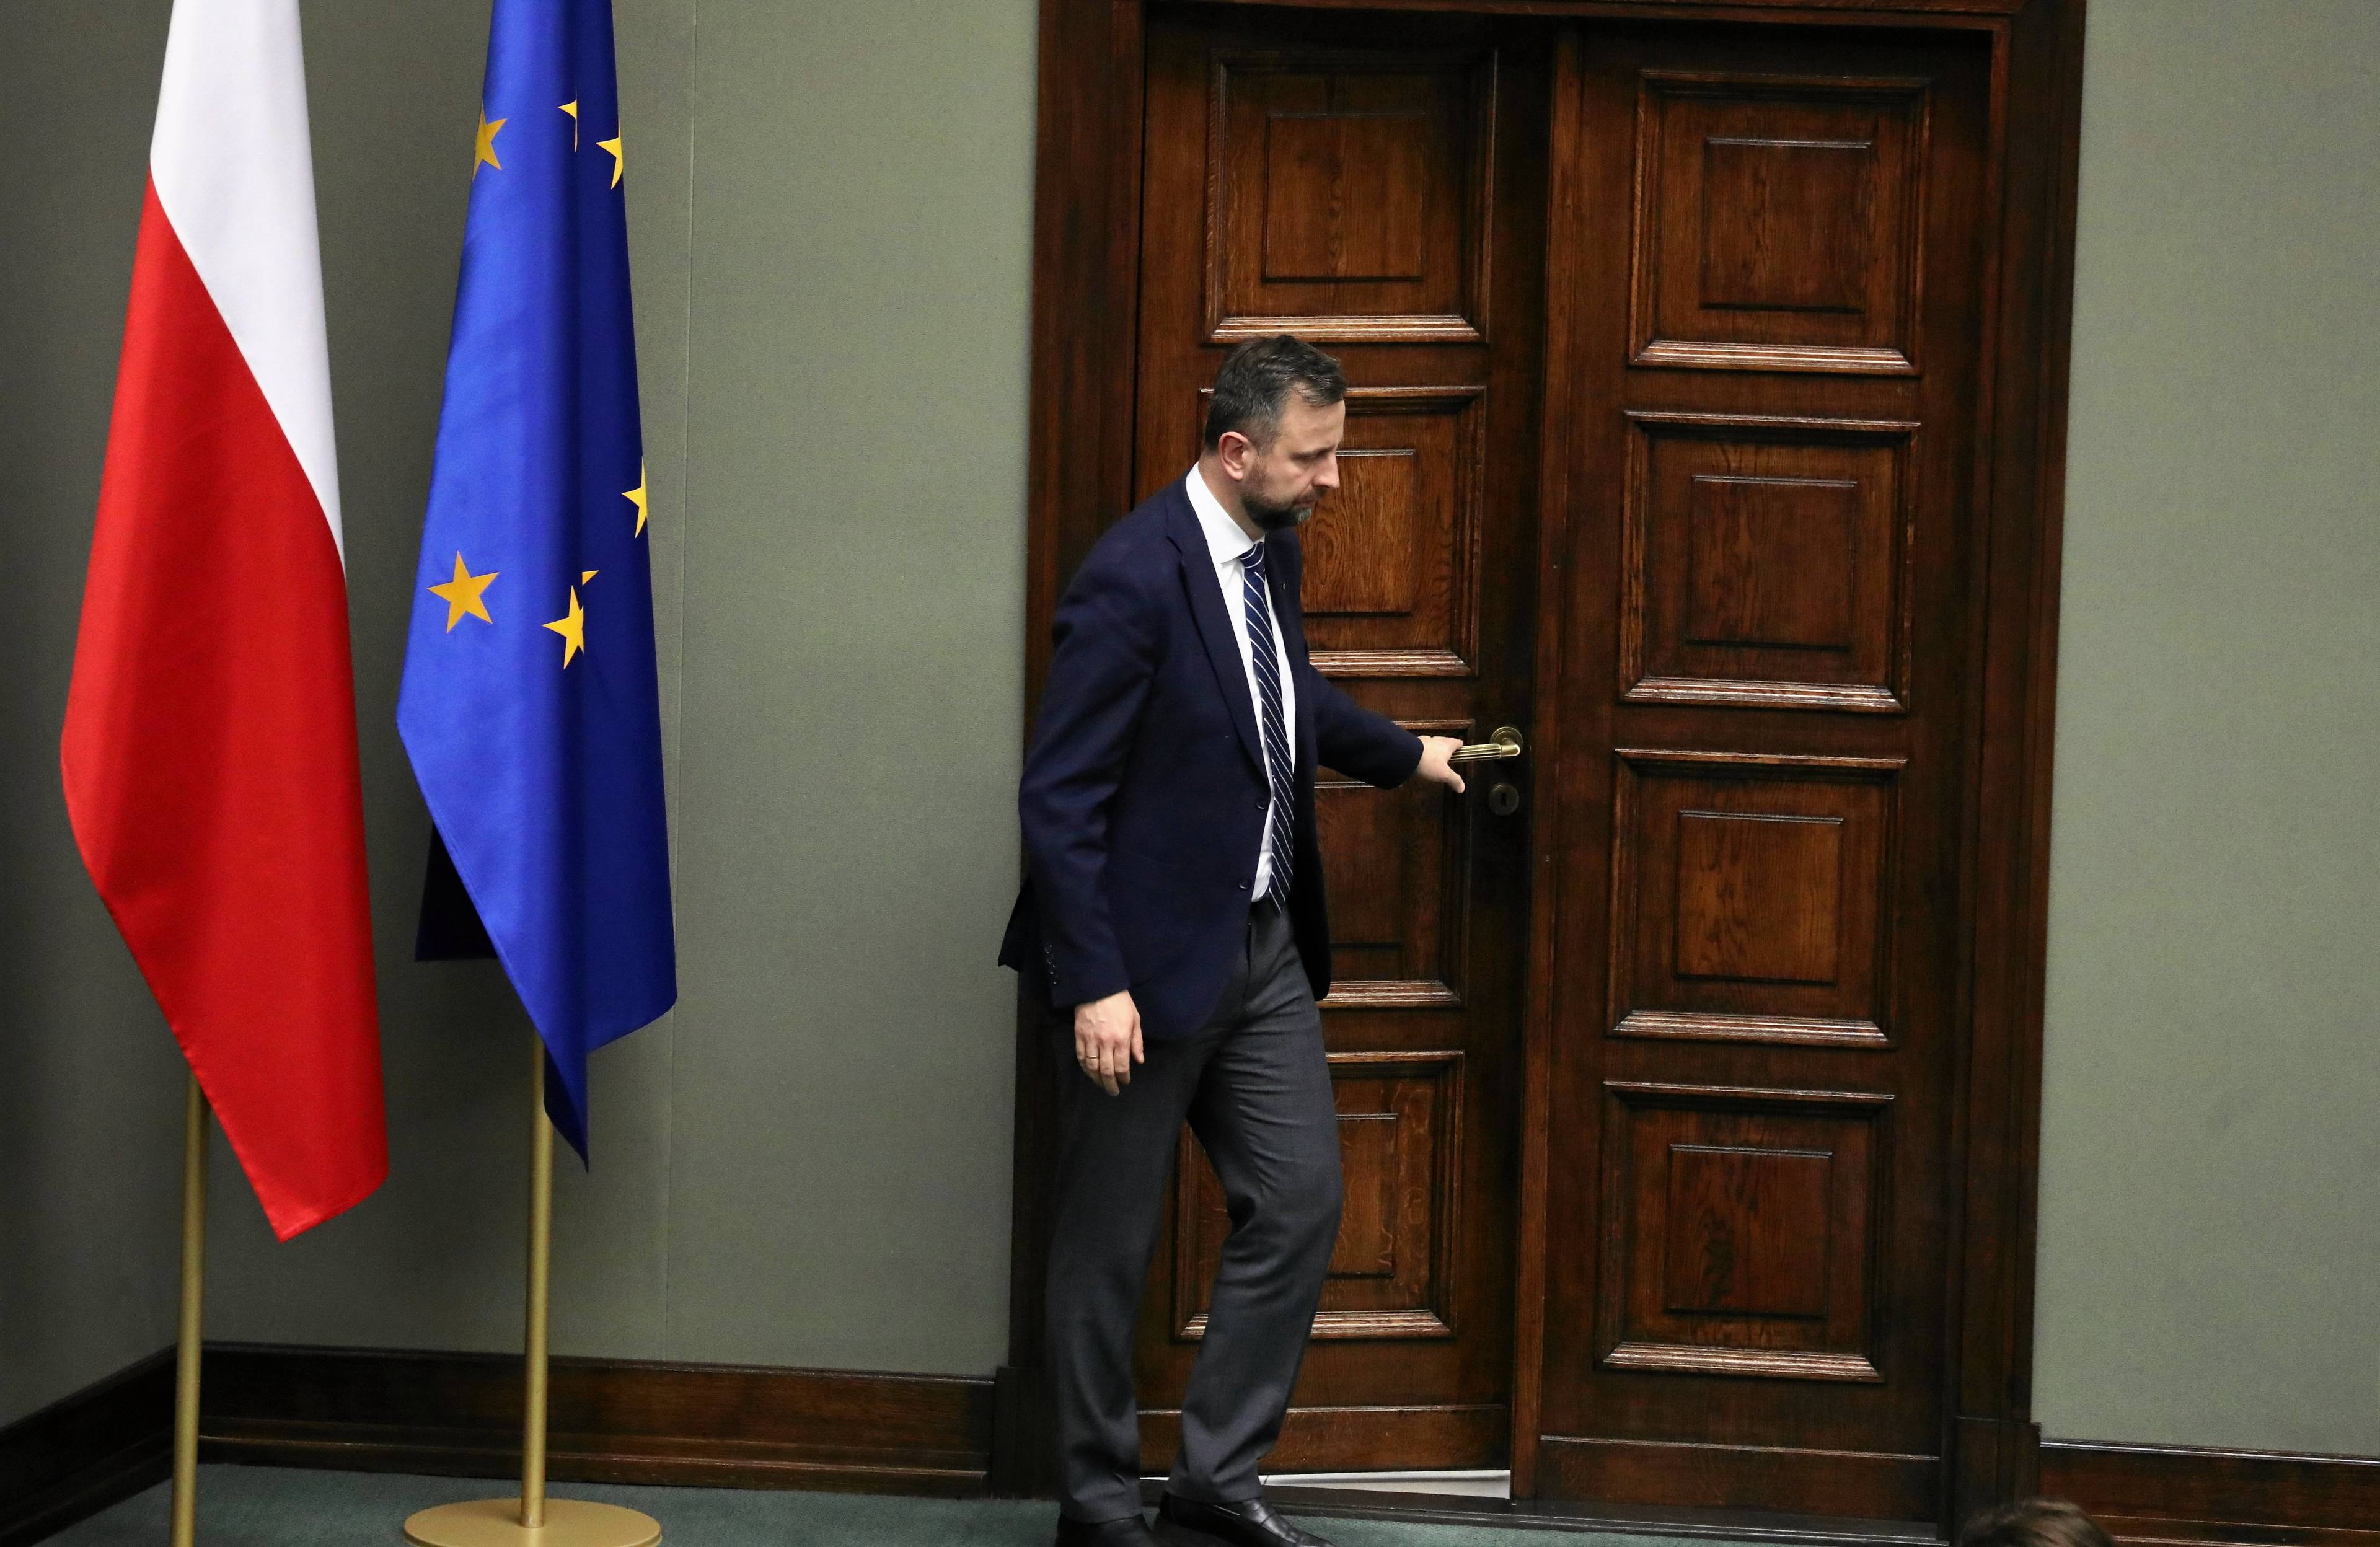 Władysław Kosiniak-Kamysz otwiera drzwi do sali rządowej w Sejmie